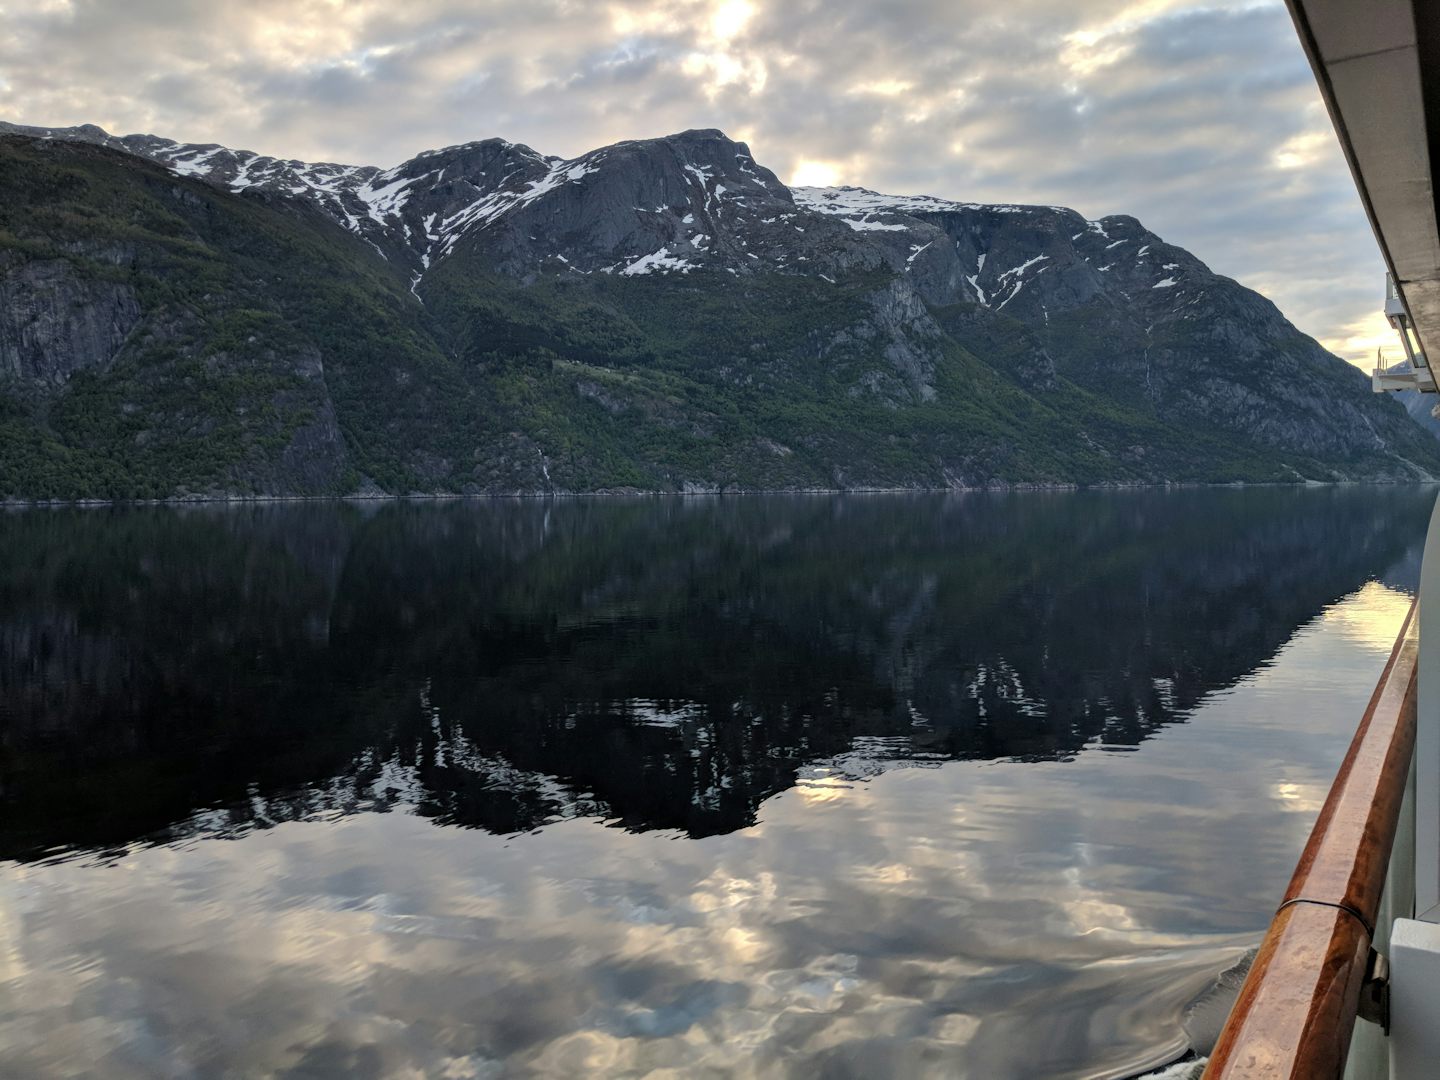 Arriving in Eidfjord